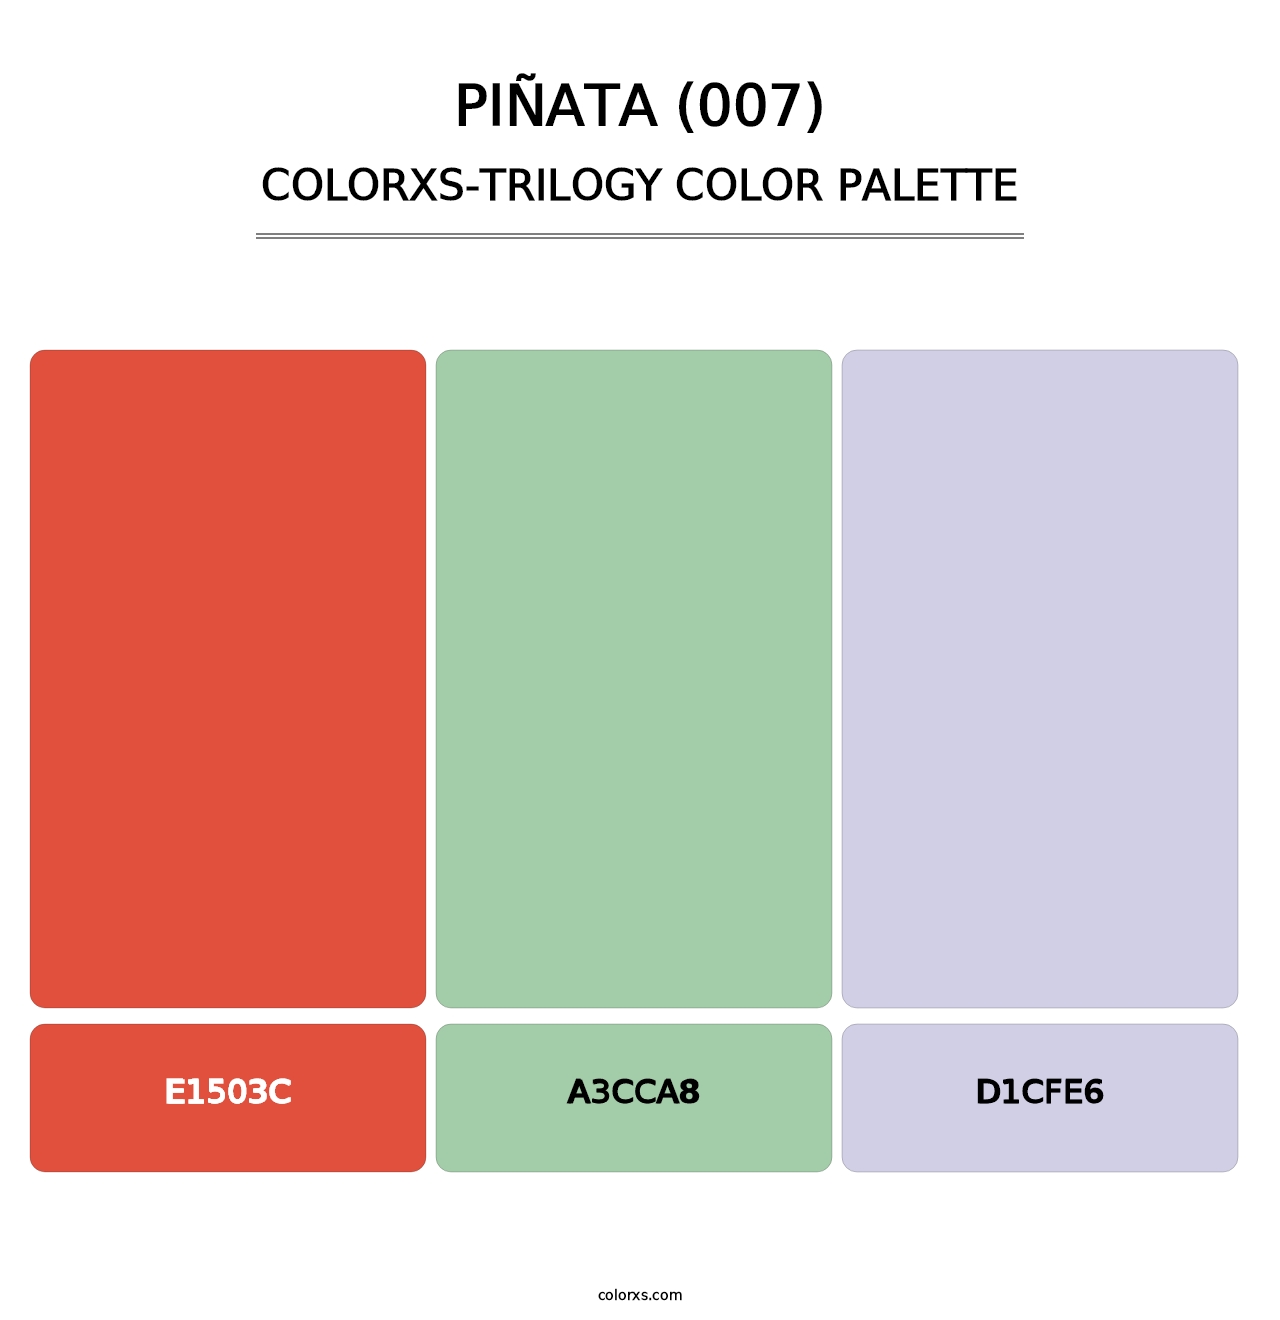 Piñata (007) - Colorxs Trilogy Palette